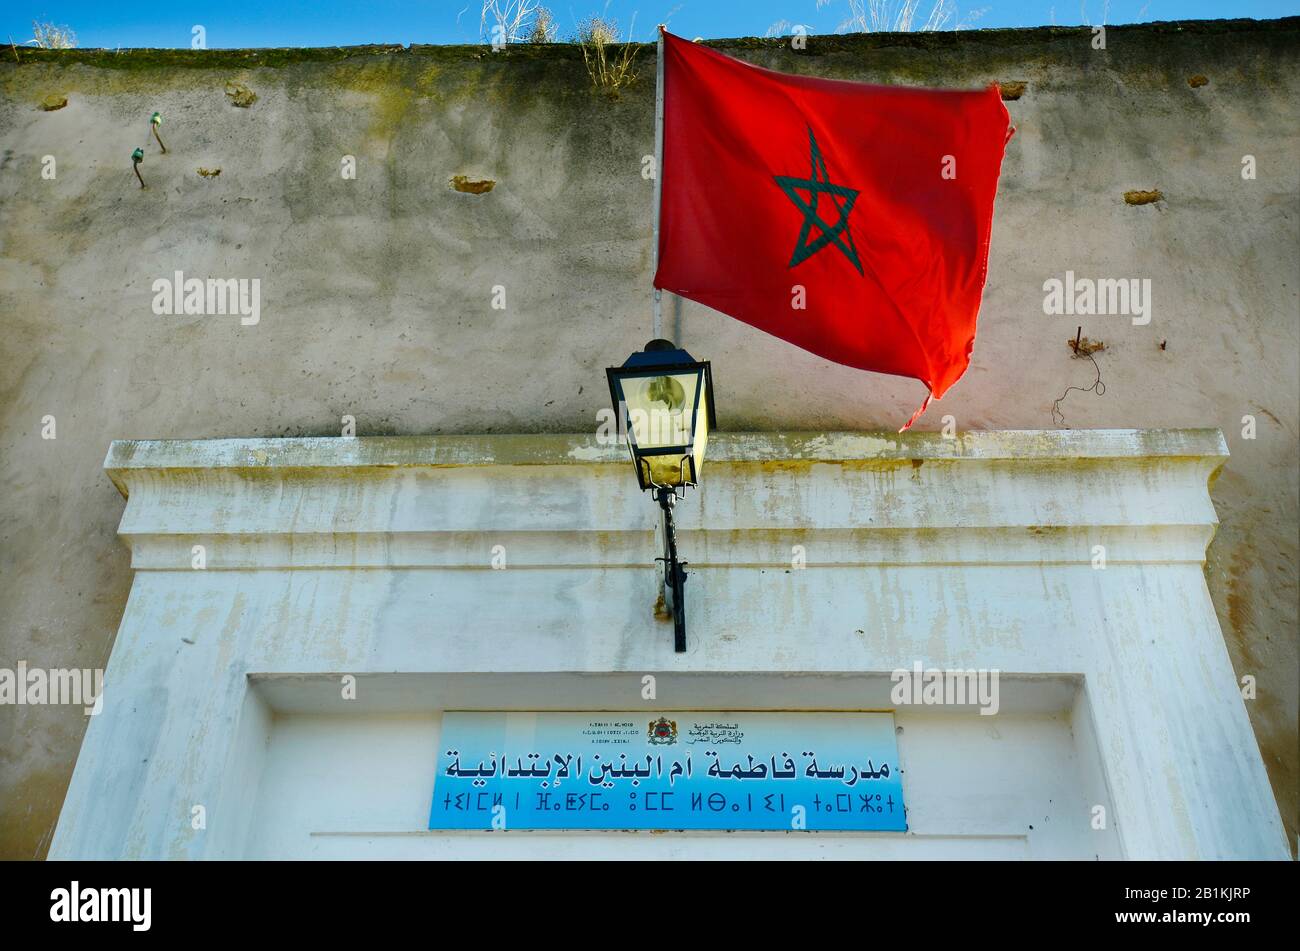 Maroc, Meknes, entrée à l'immeuble de bureaux avec drapeau et planche marocains en arabe et en écriture berbère Banque D'Images